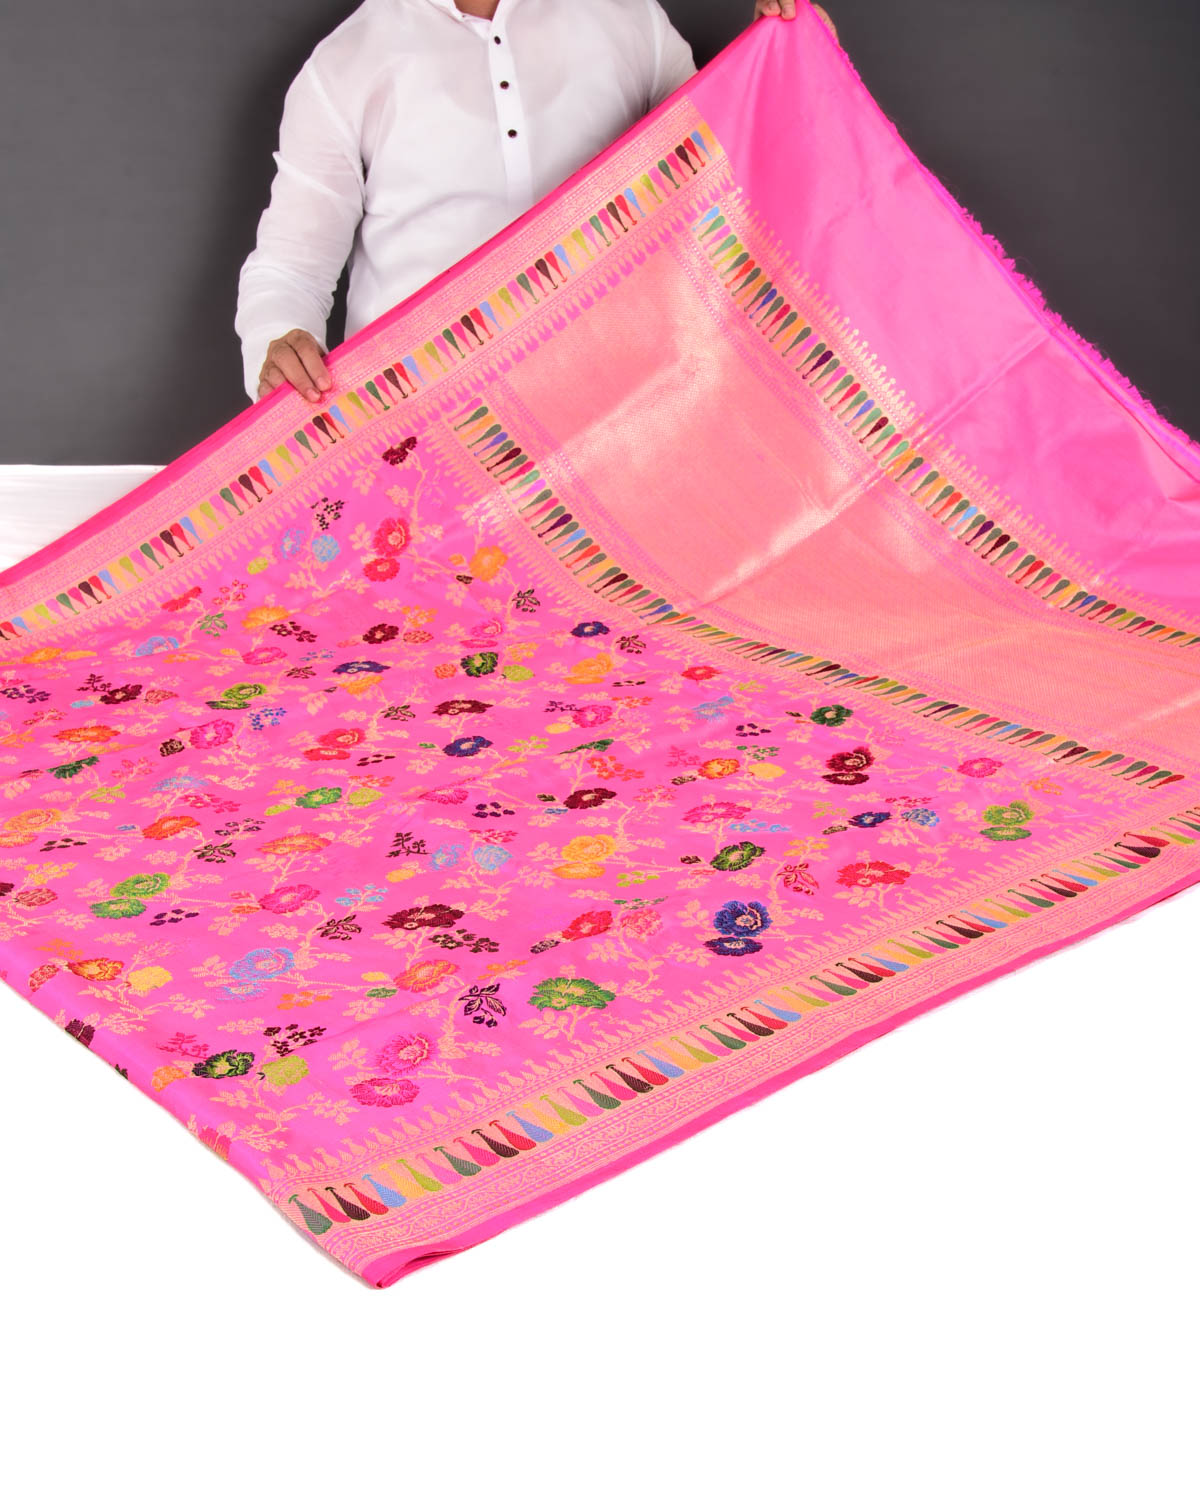 Pink Banarasi "Hues of Nature" Kadhuan Brocade Handwoven Katan Silk Saree - By HolyWeaves, Benares